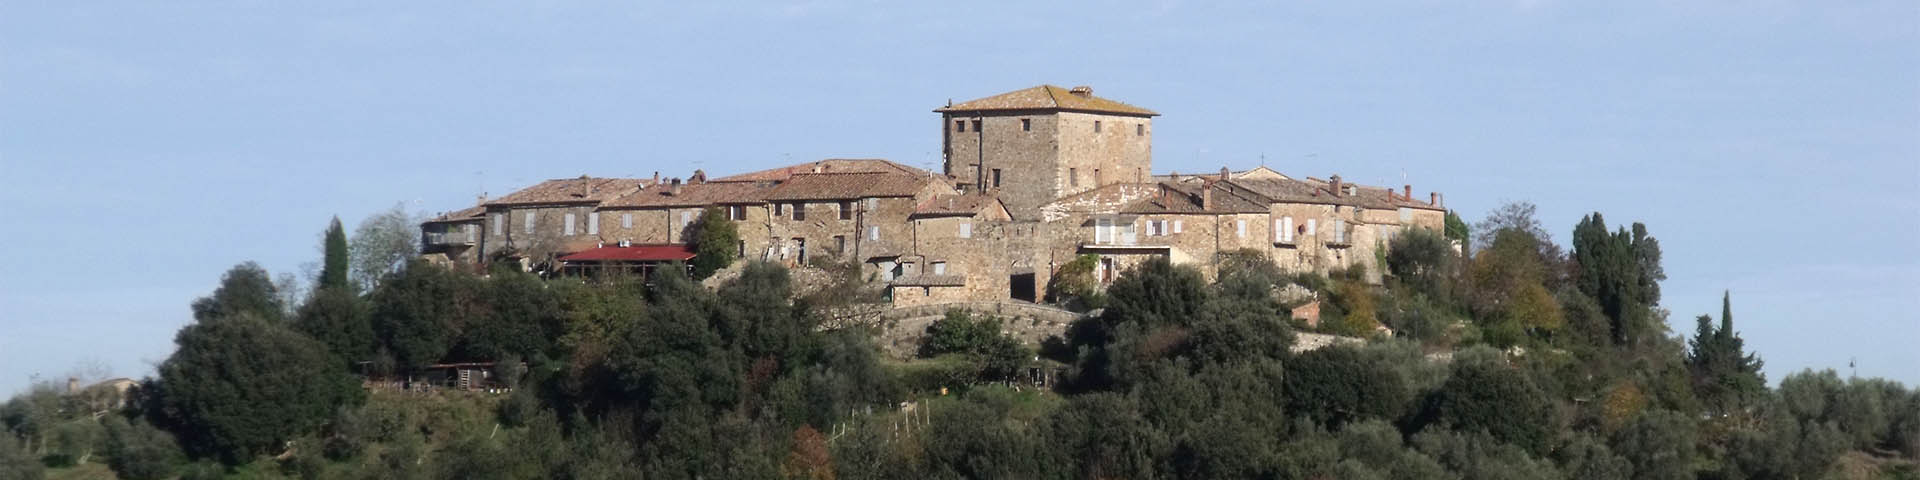 Castello di Murlo